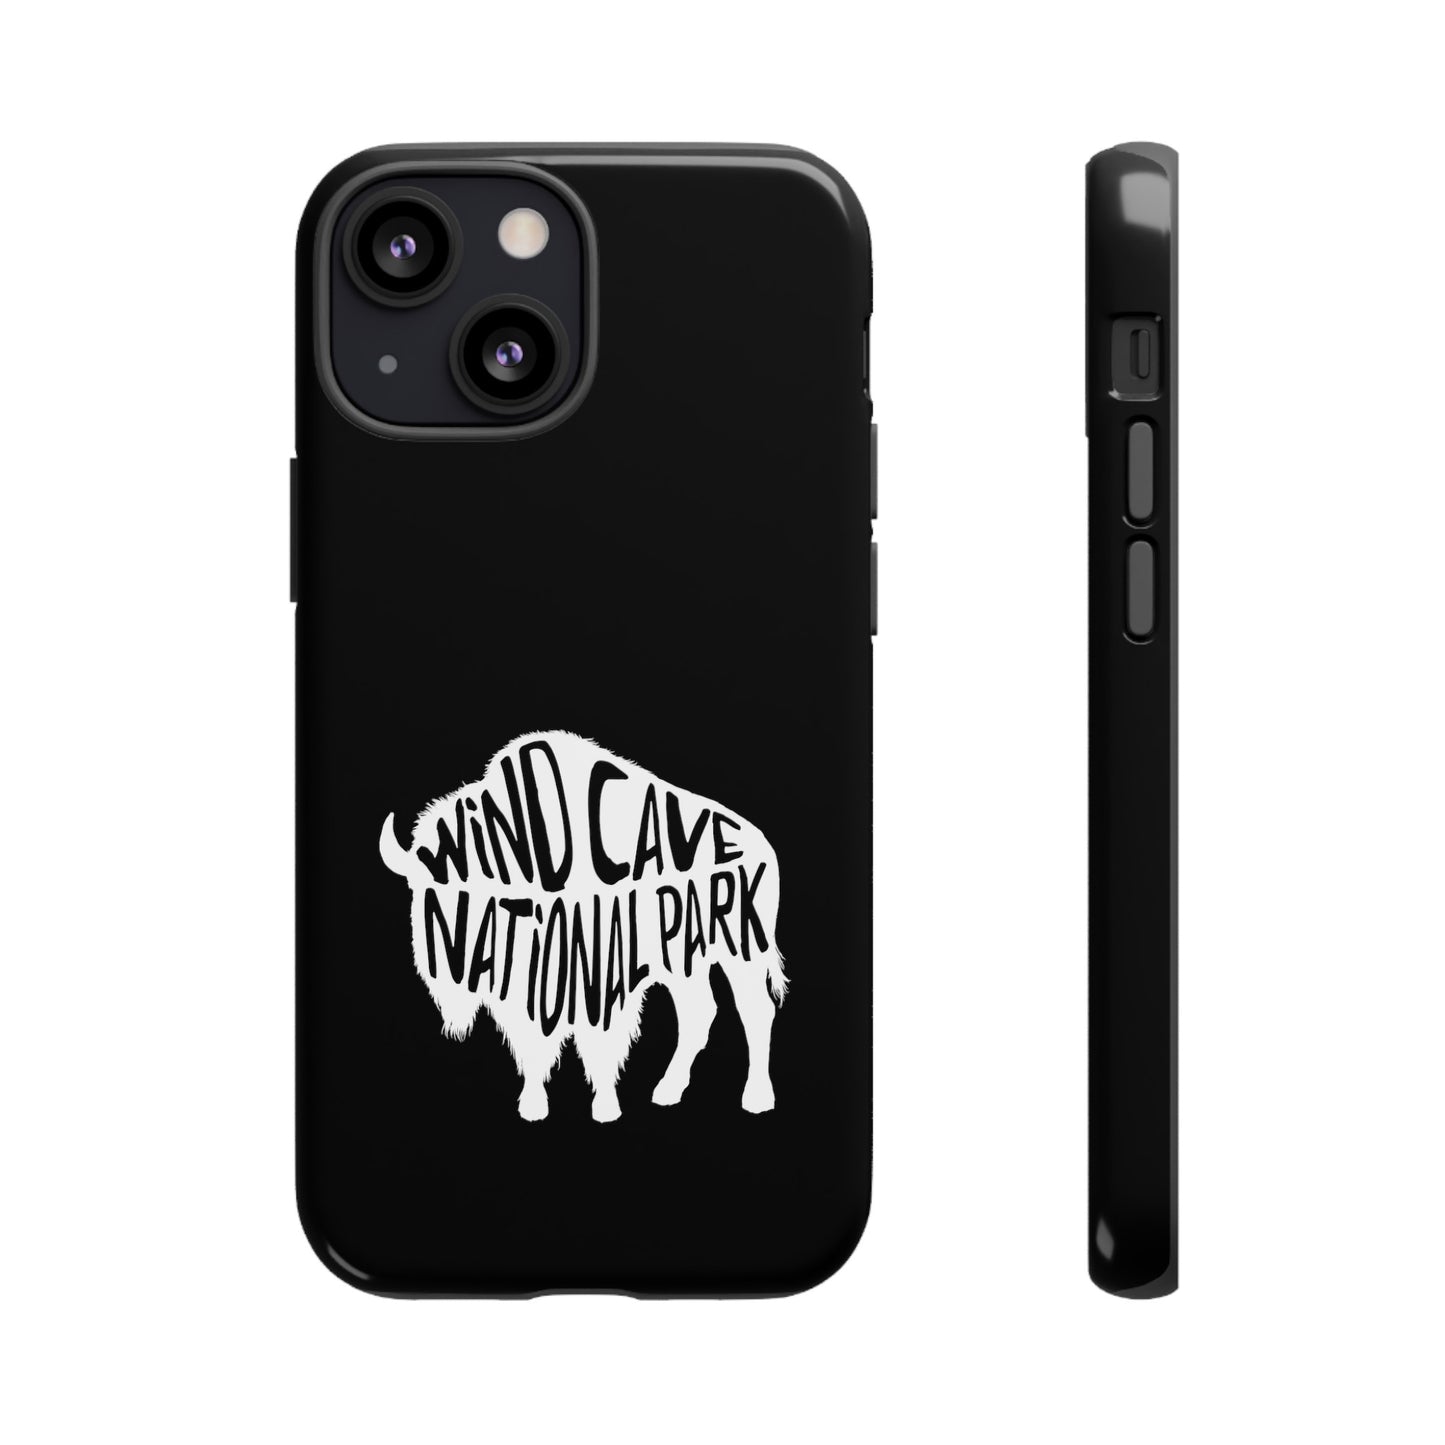 Wind Cave National Park Phone Case - Bison Design